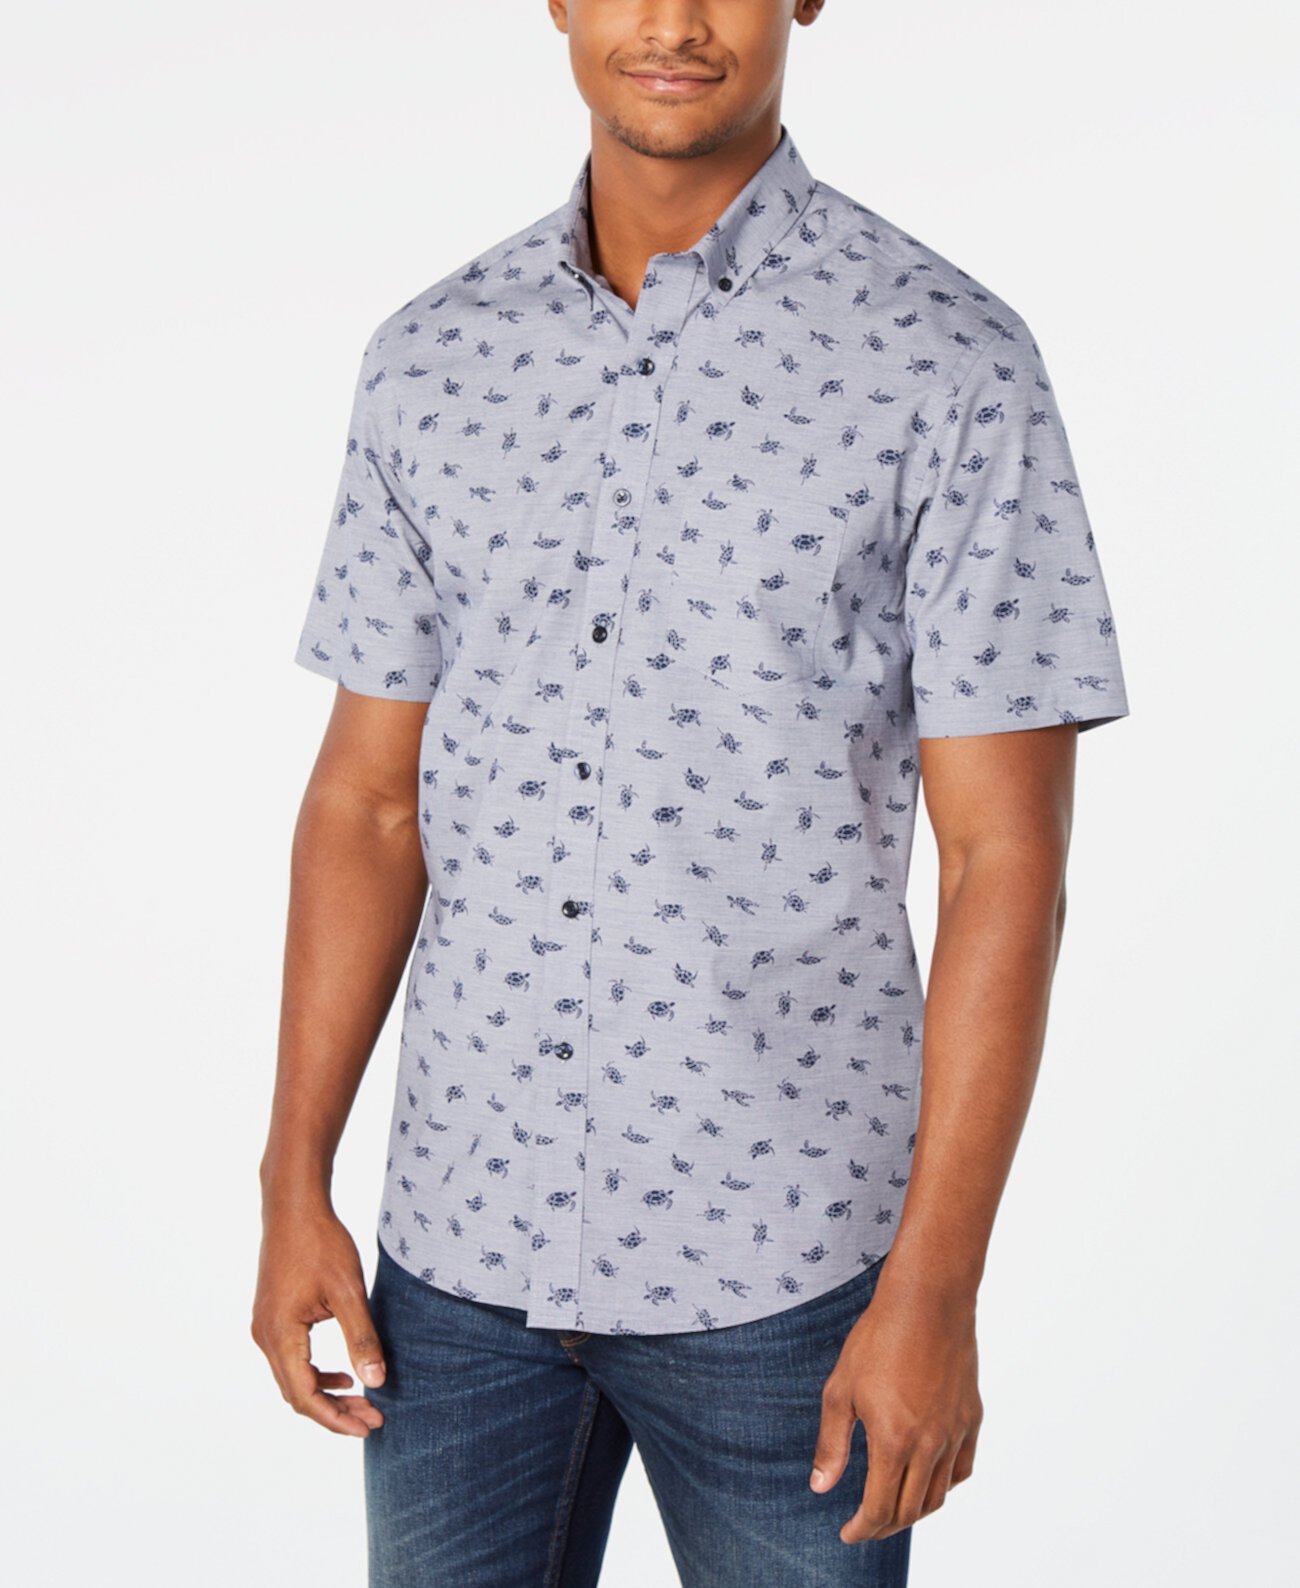 Мужская рубашка Lyden Turtle с рисунком, созданная для Macy's Club Room